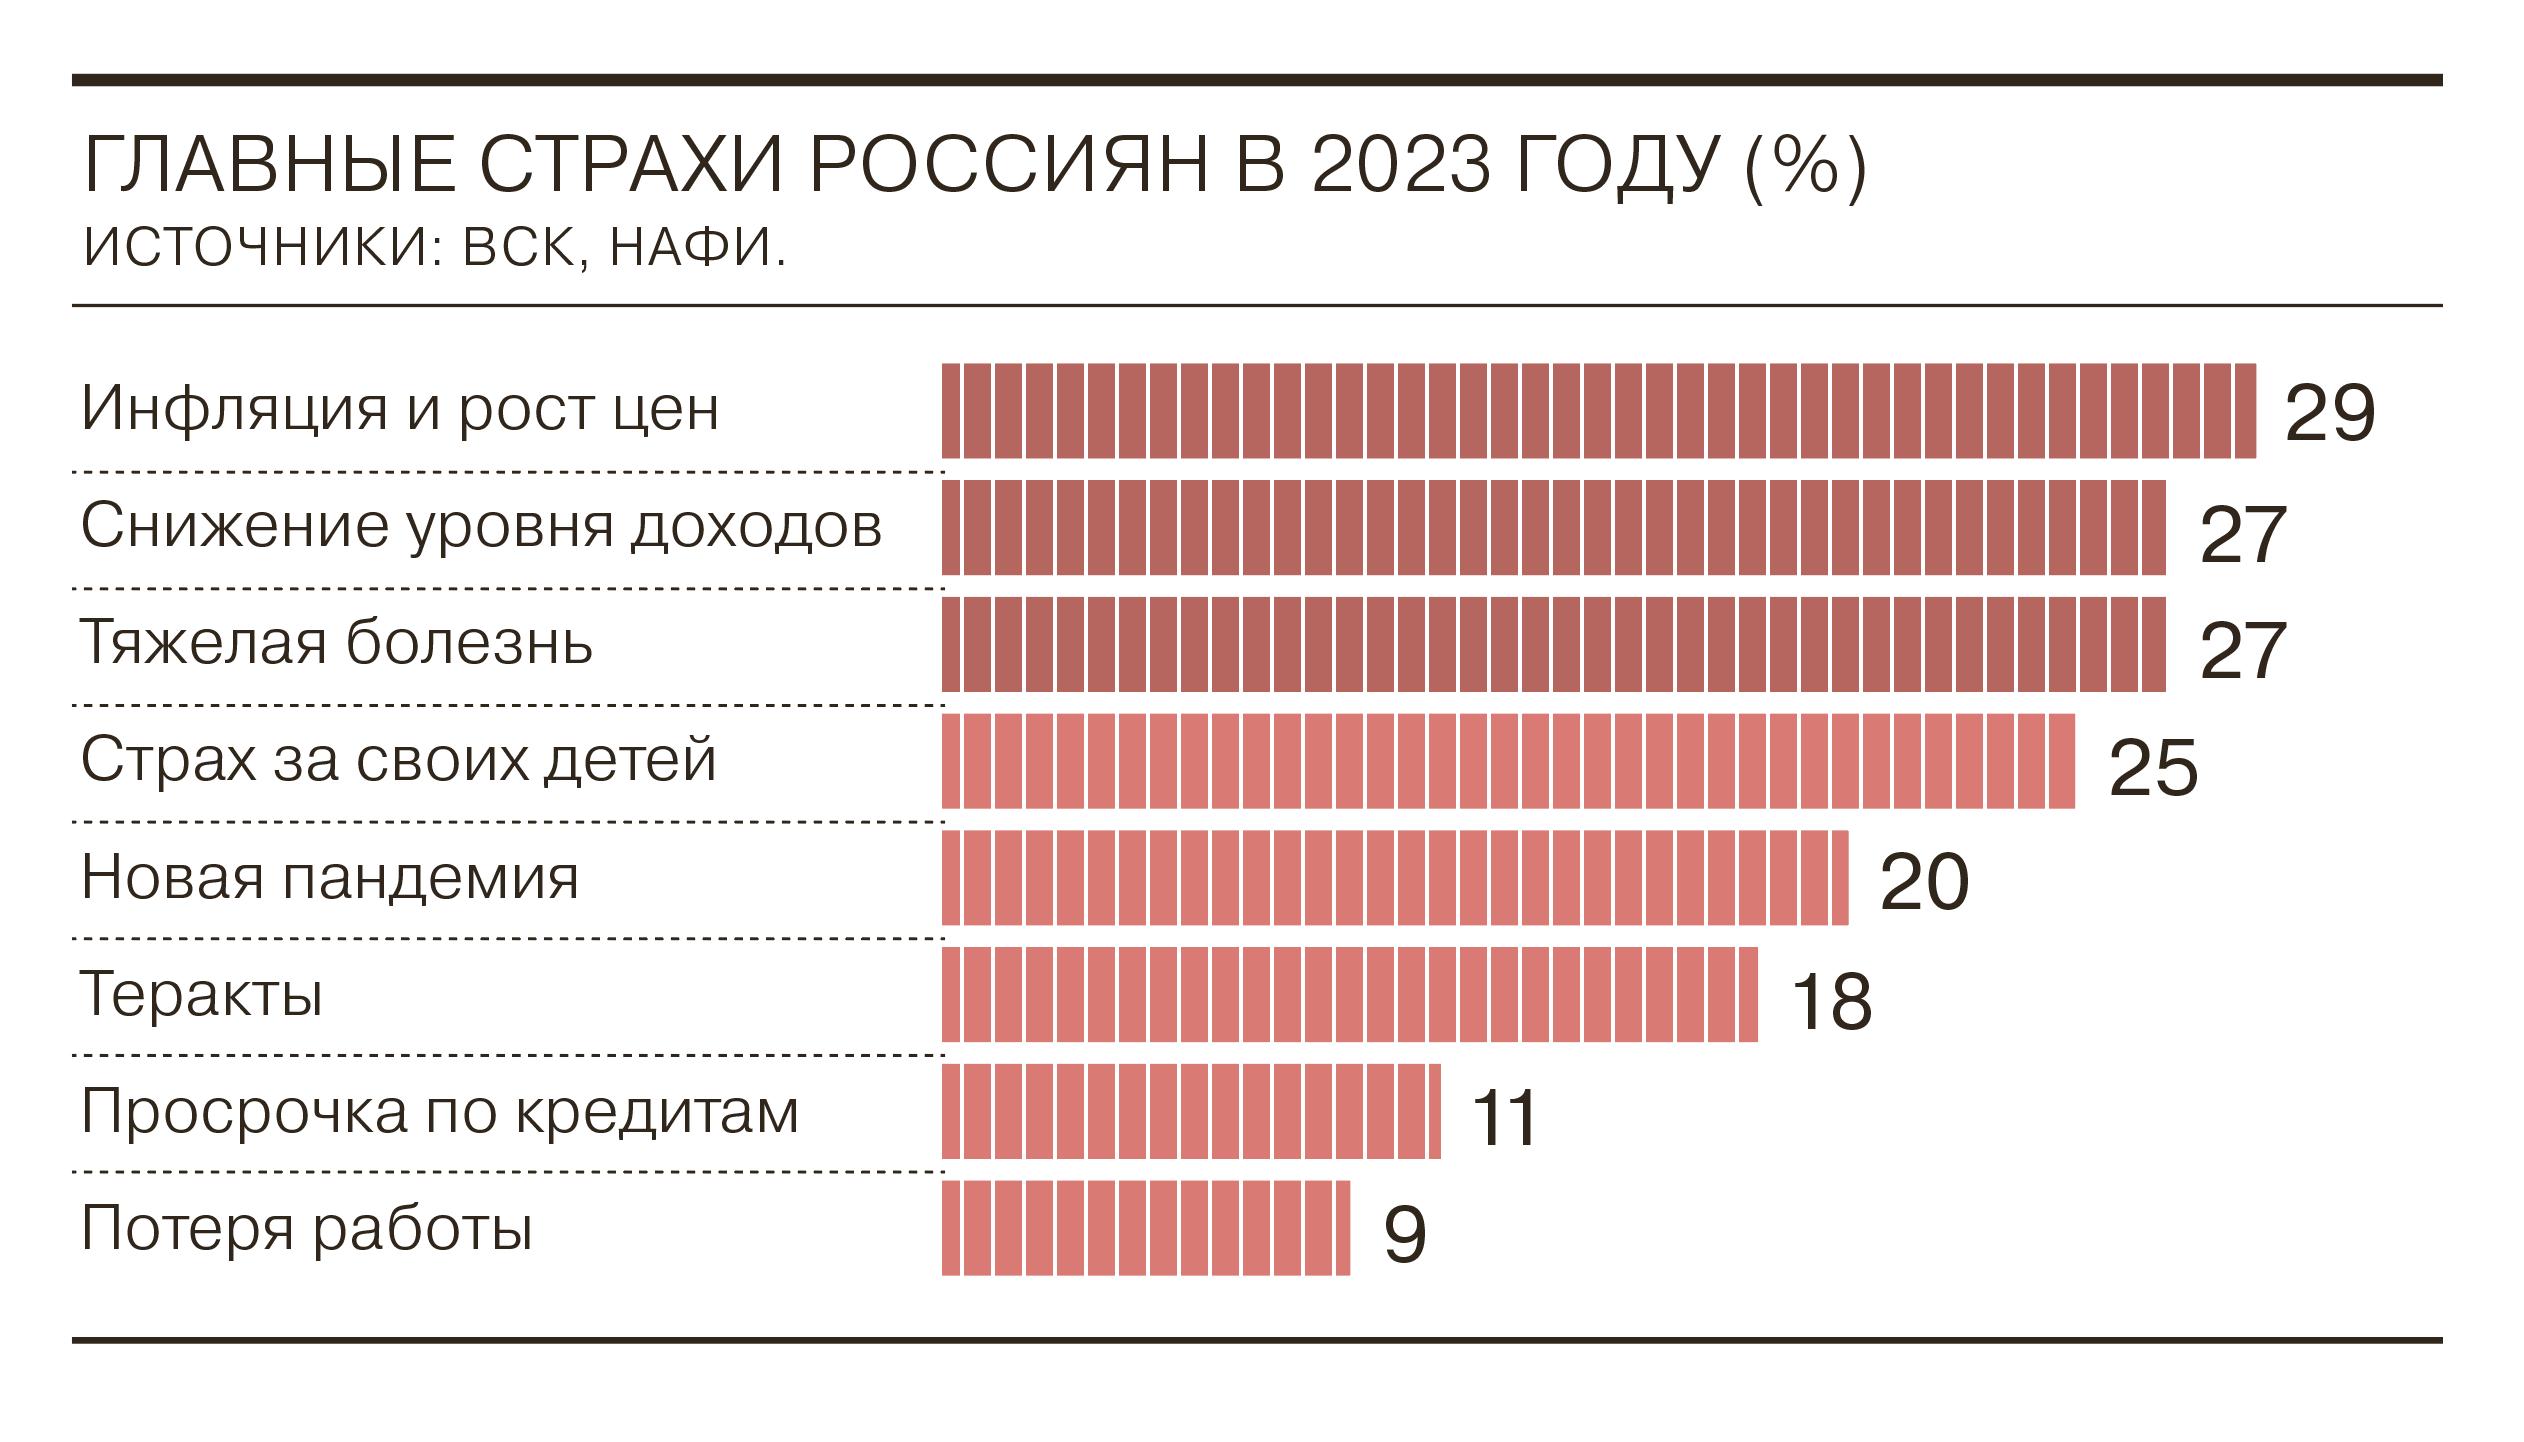 27 лет в 2023 году. Страхи россиян 2023. Доходы россиян в 2023. Доходность россиян в 2023 году. Инфляция в России в 2023.